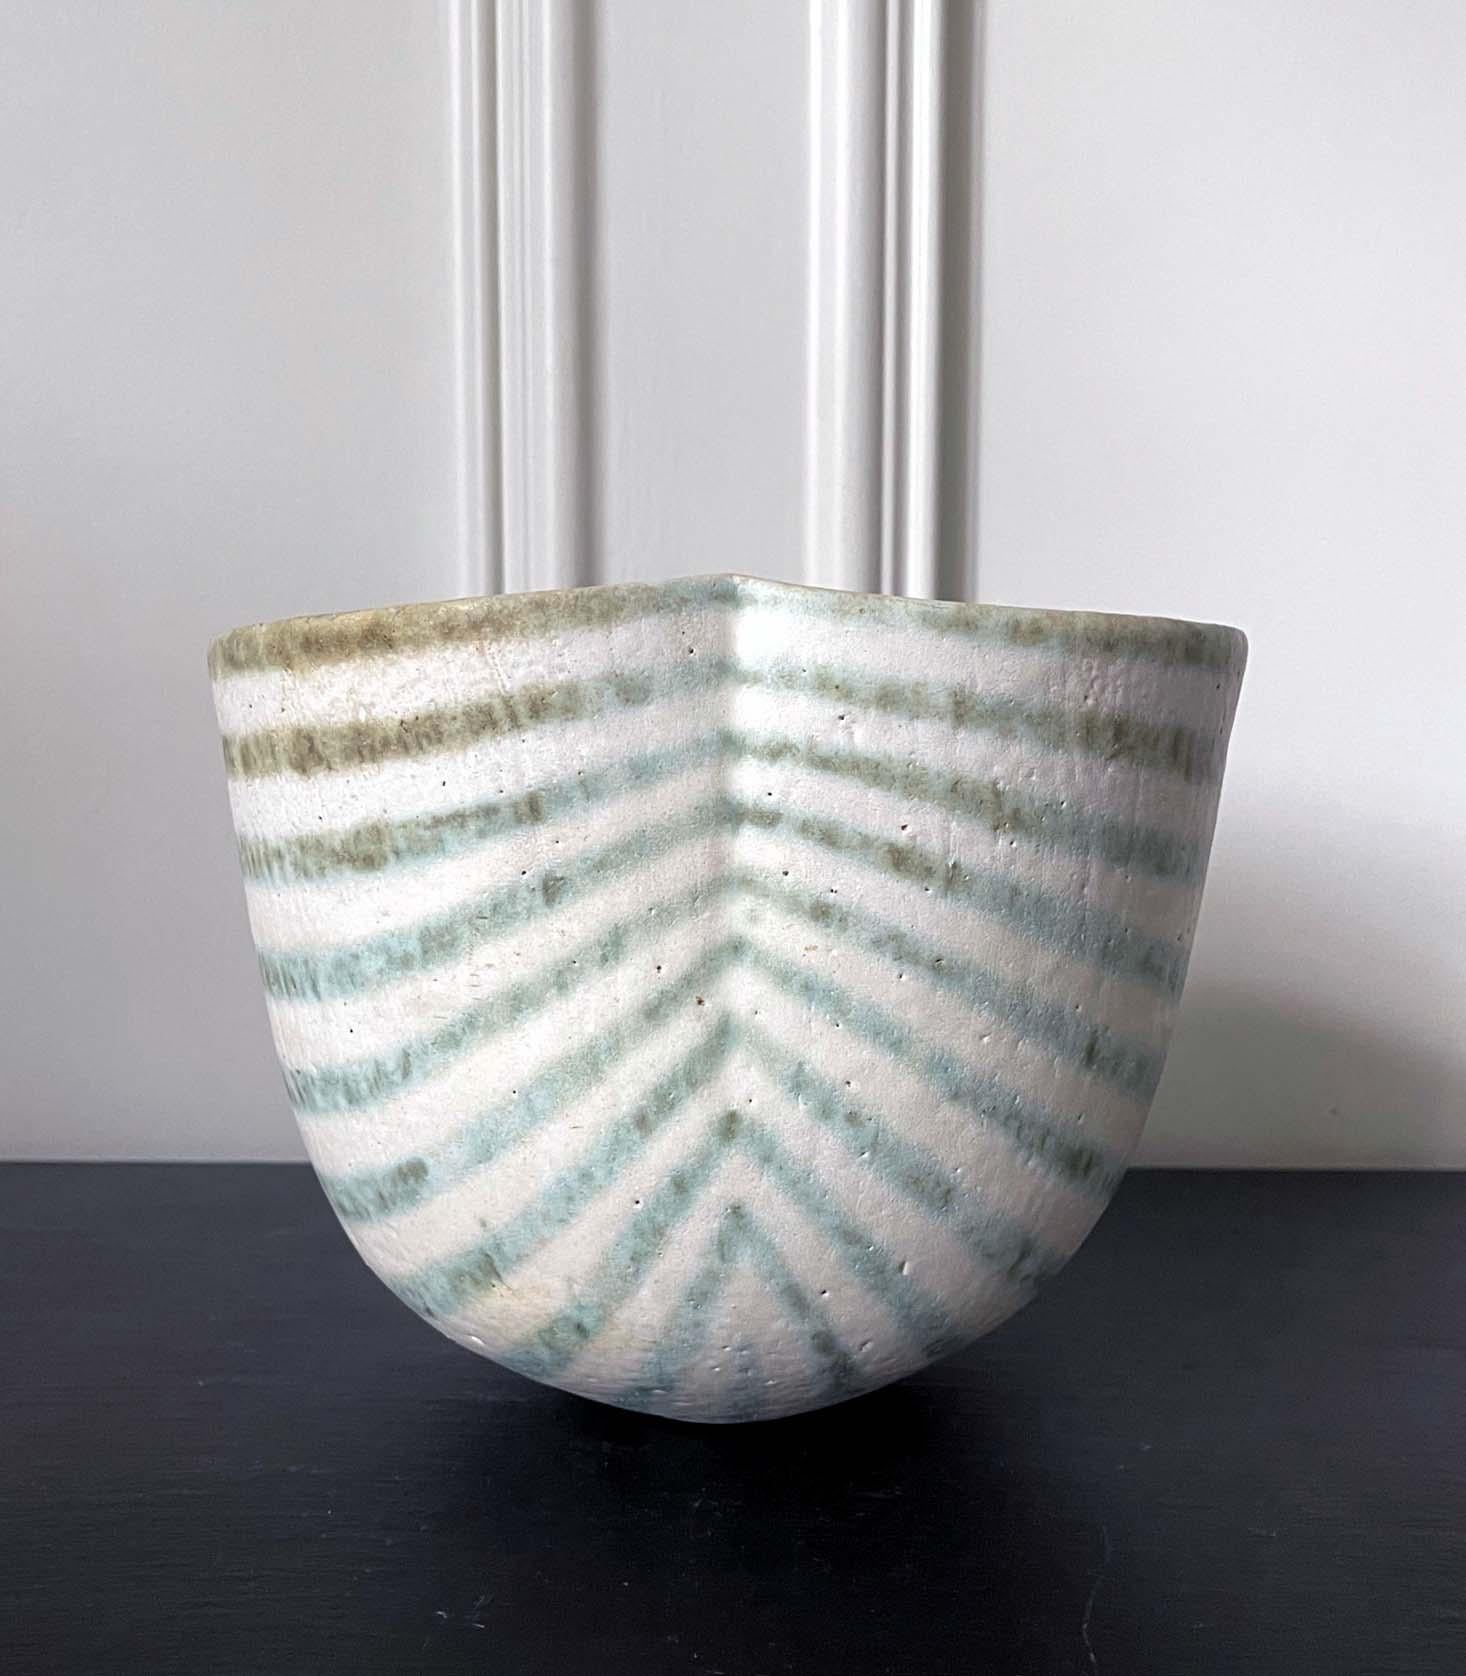 Vase en grès à décor de bandes émaillées et rayées du céramiste de studio britannique John Ward (1938-2023), vers 1986. Le récipient prend sa forme simple mais distincte entre un bol profond et un vase, avec son pliage organique et sa courbe douce.